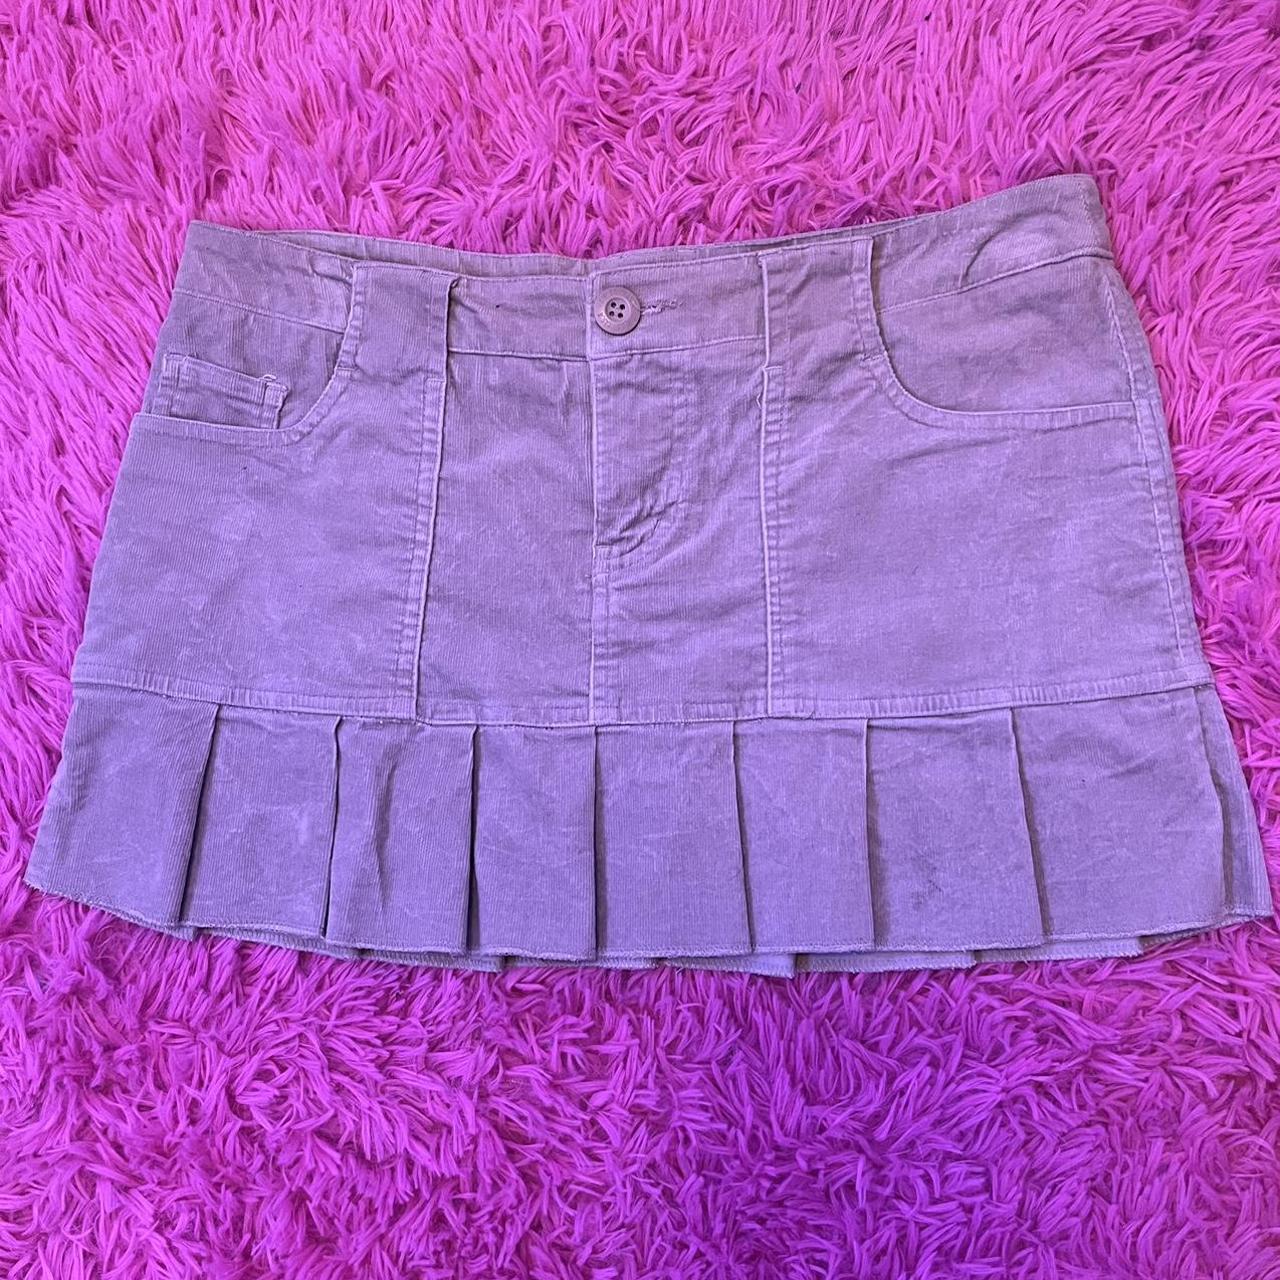 Iris Los Angeles Women's Cream and Khaki Skirt